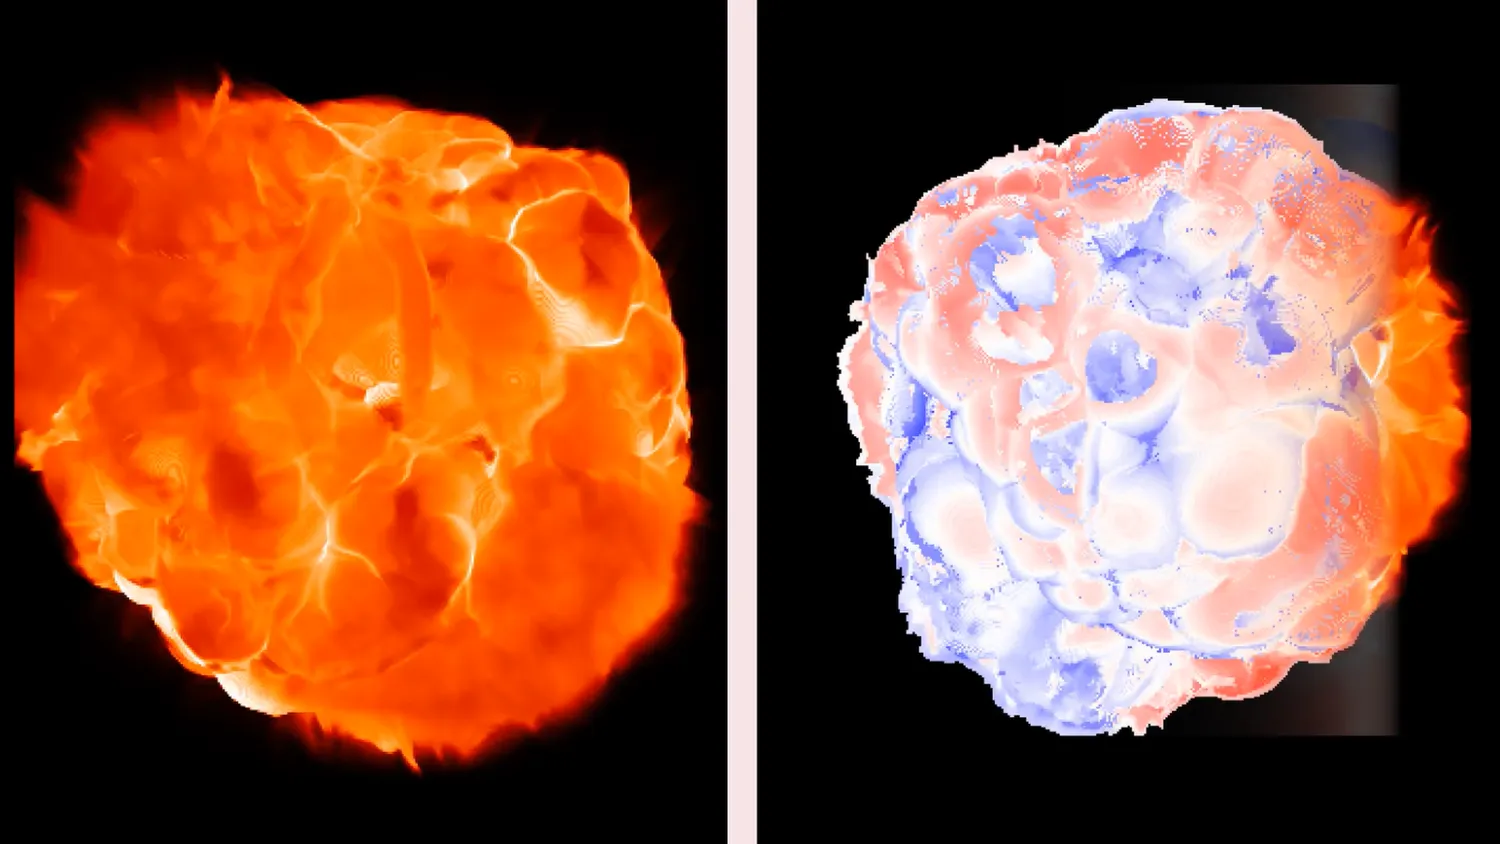 Mehr über den Artikel erfahren Die kochende Oberfläche des Riesensterns Betelgeuse könnte eine Illusion sein